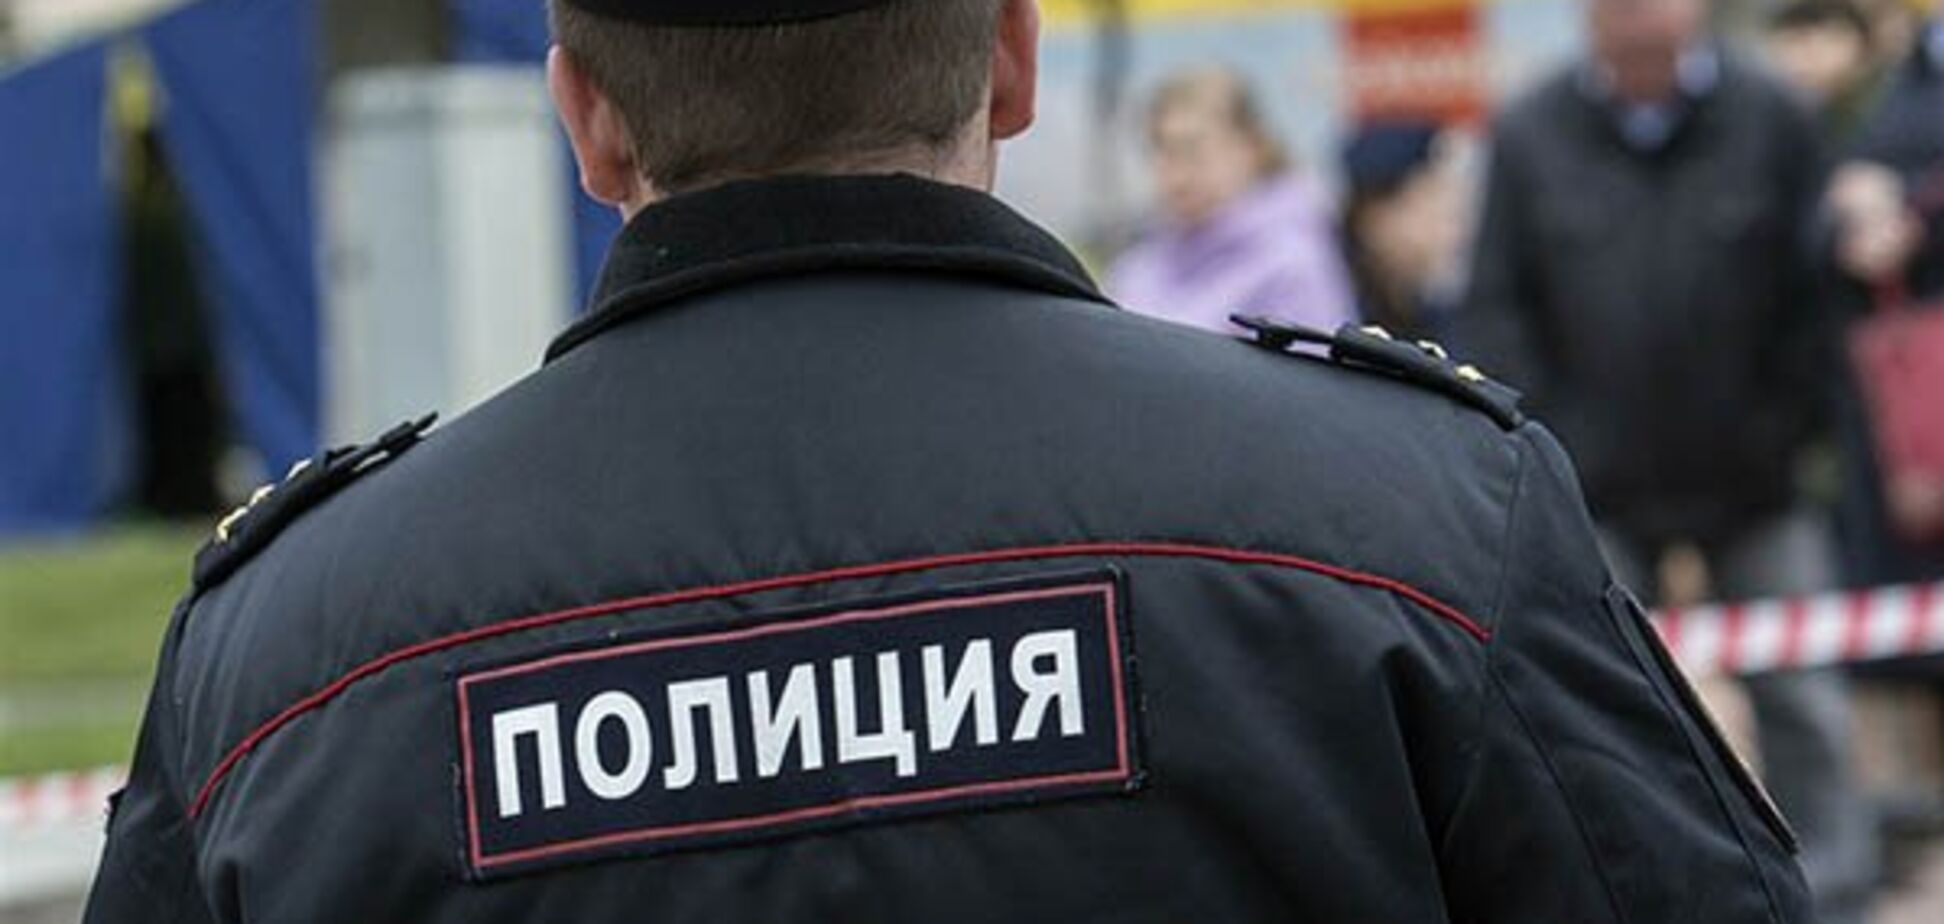 Напередодні нового року в Росії розстріляли поліцейських: є жертви. Відео